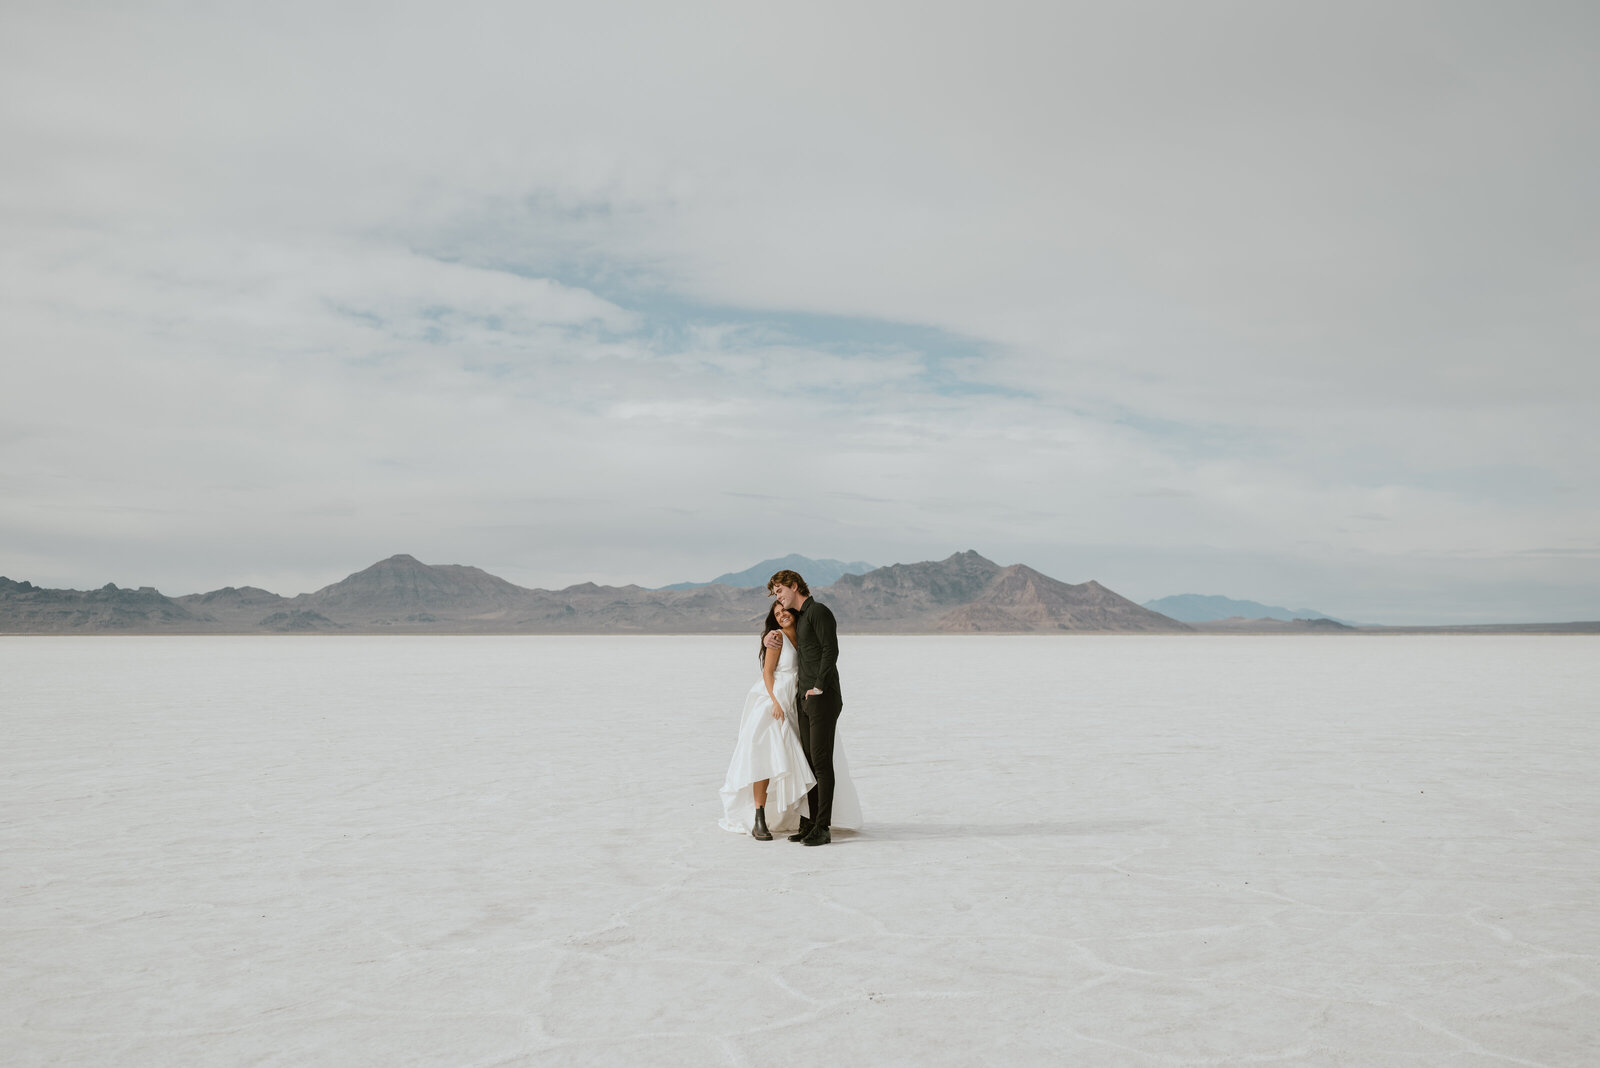 An elopement couple walks together through the Bonneville Salt Flats near Salt Lake City, Utah.